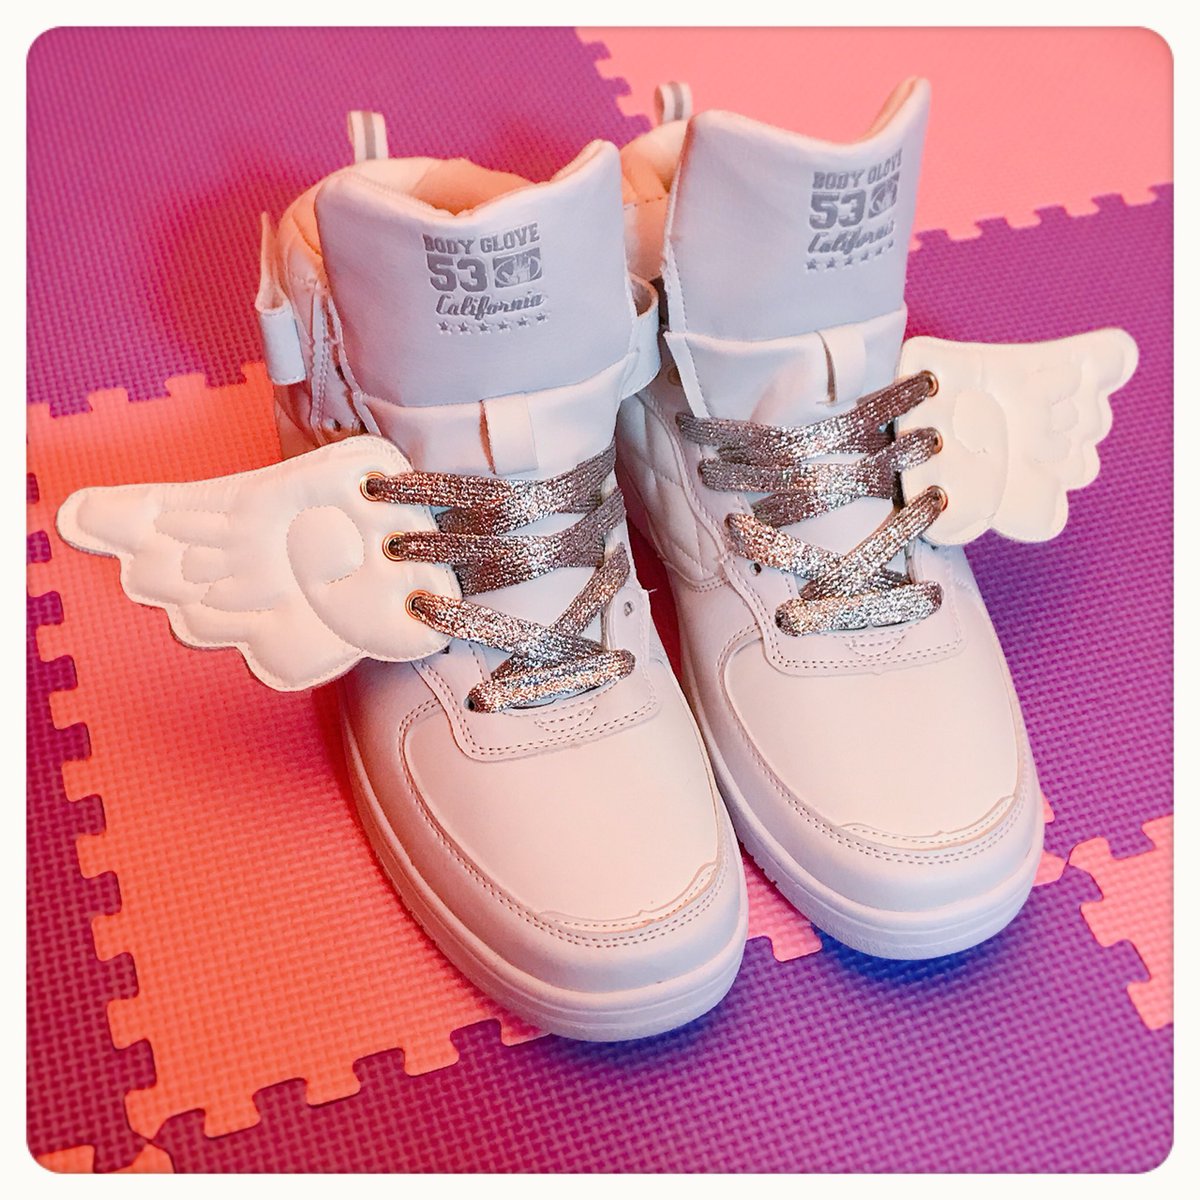 Bisuko Ezaki 11 1渋谷babyswanゲスト出勤 Na Twitteru また天使の羽スニーカー作った 今までのより羽の形が ゆめかわいい感じ 28cmだから可愛い靴売ってなくて 自分でシンプルなスニーカーに紐と羽でカスタマイズするしかないのだ